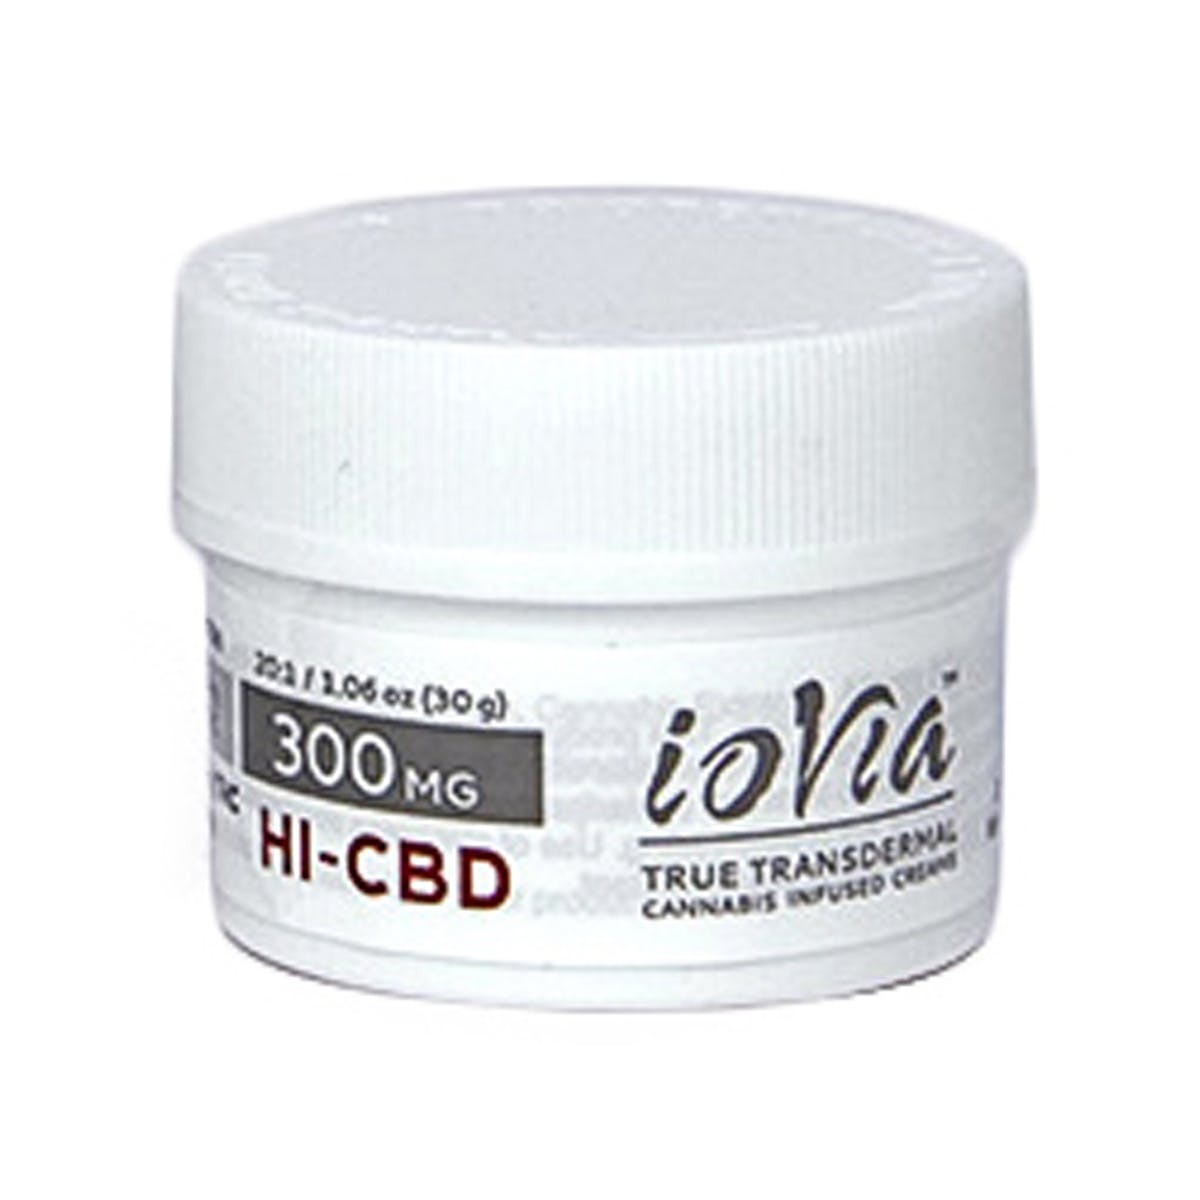 (Med) ioVia Transdermal - 300mg HI-CBD